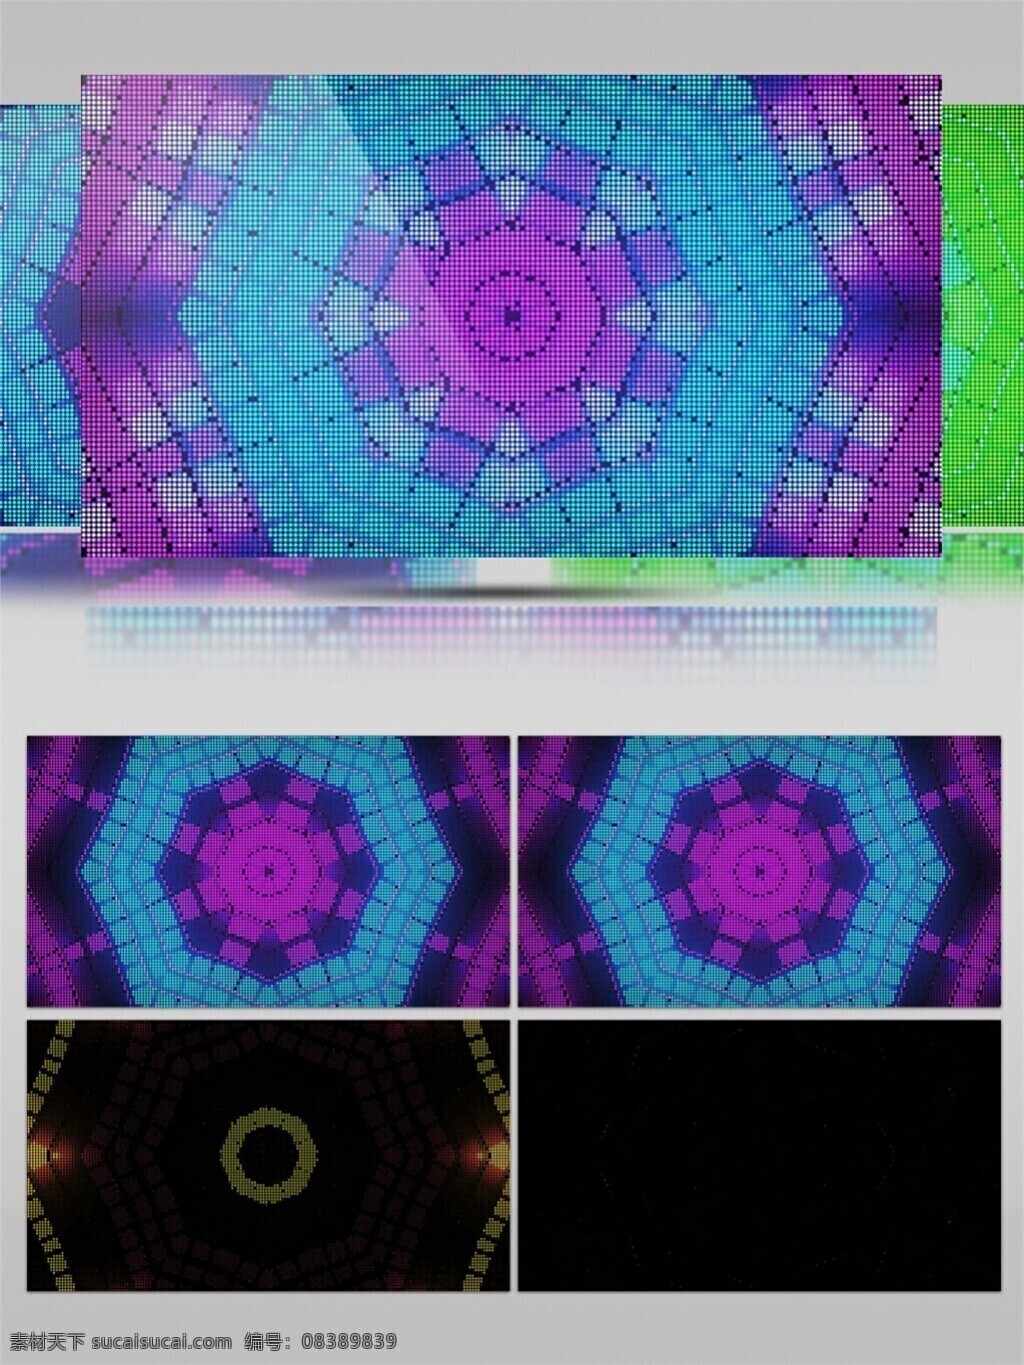 紫色 光束 舞台 视频 光斑散射 激光 梦幻 视觉享受 手机壁纸